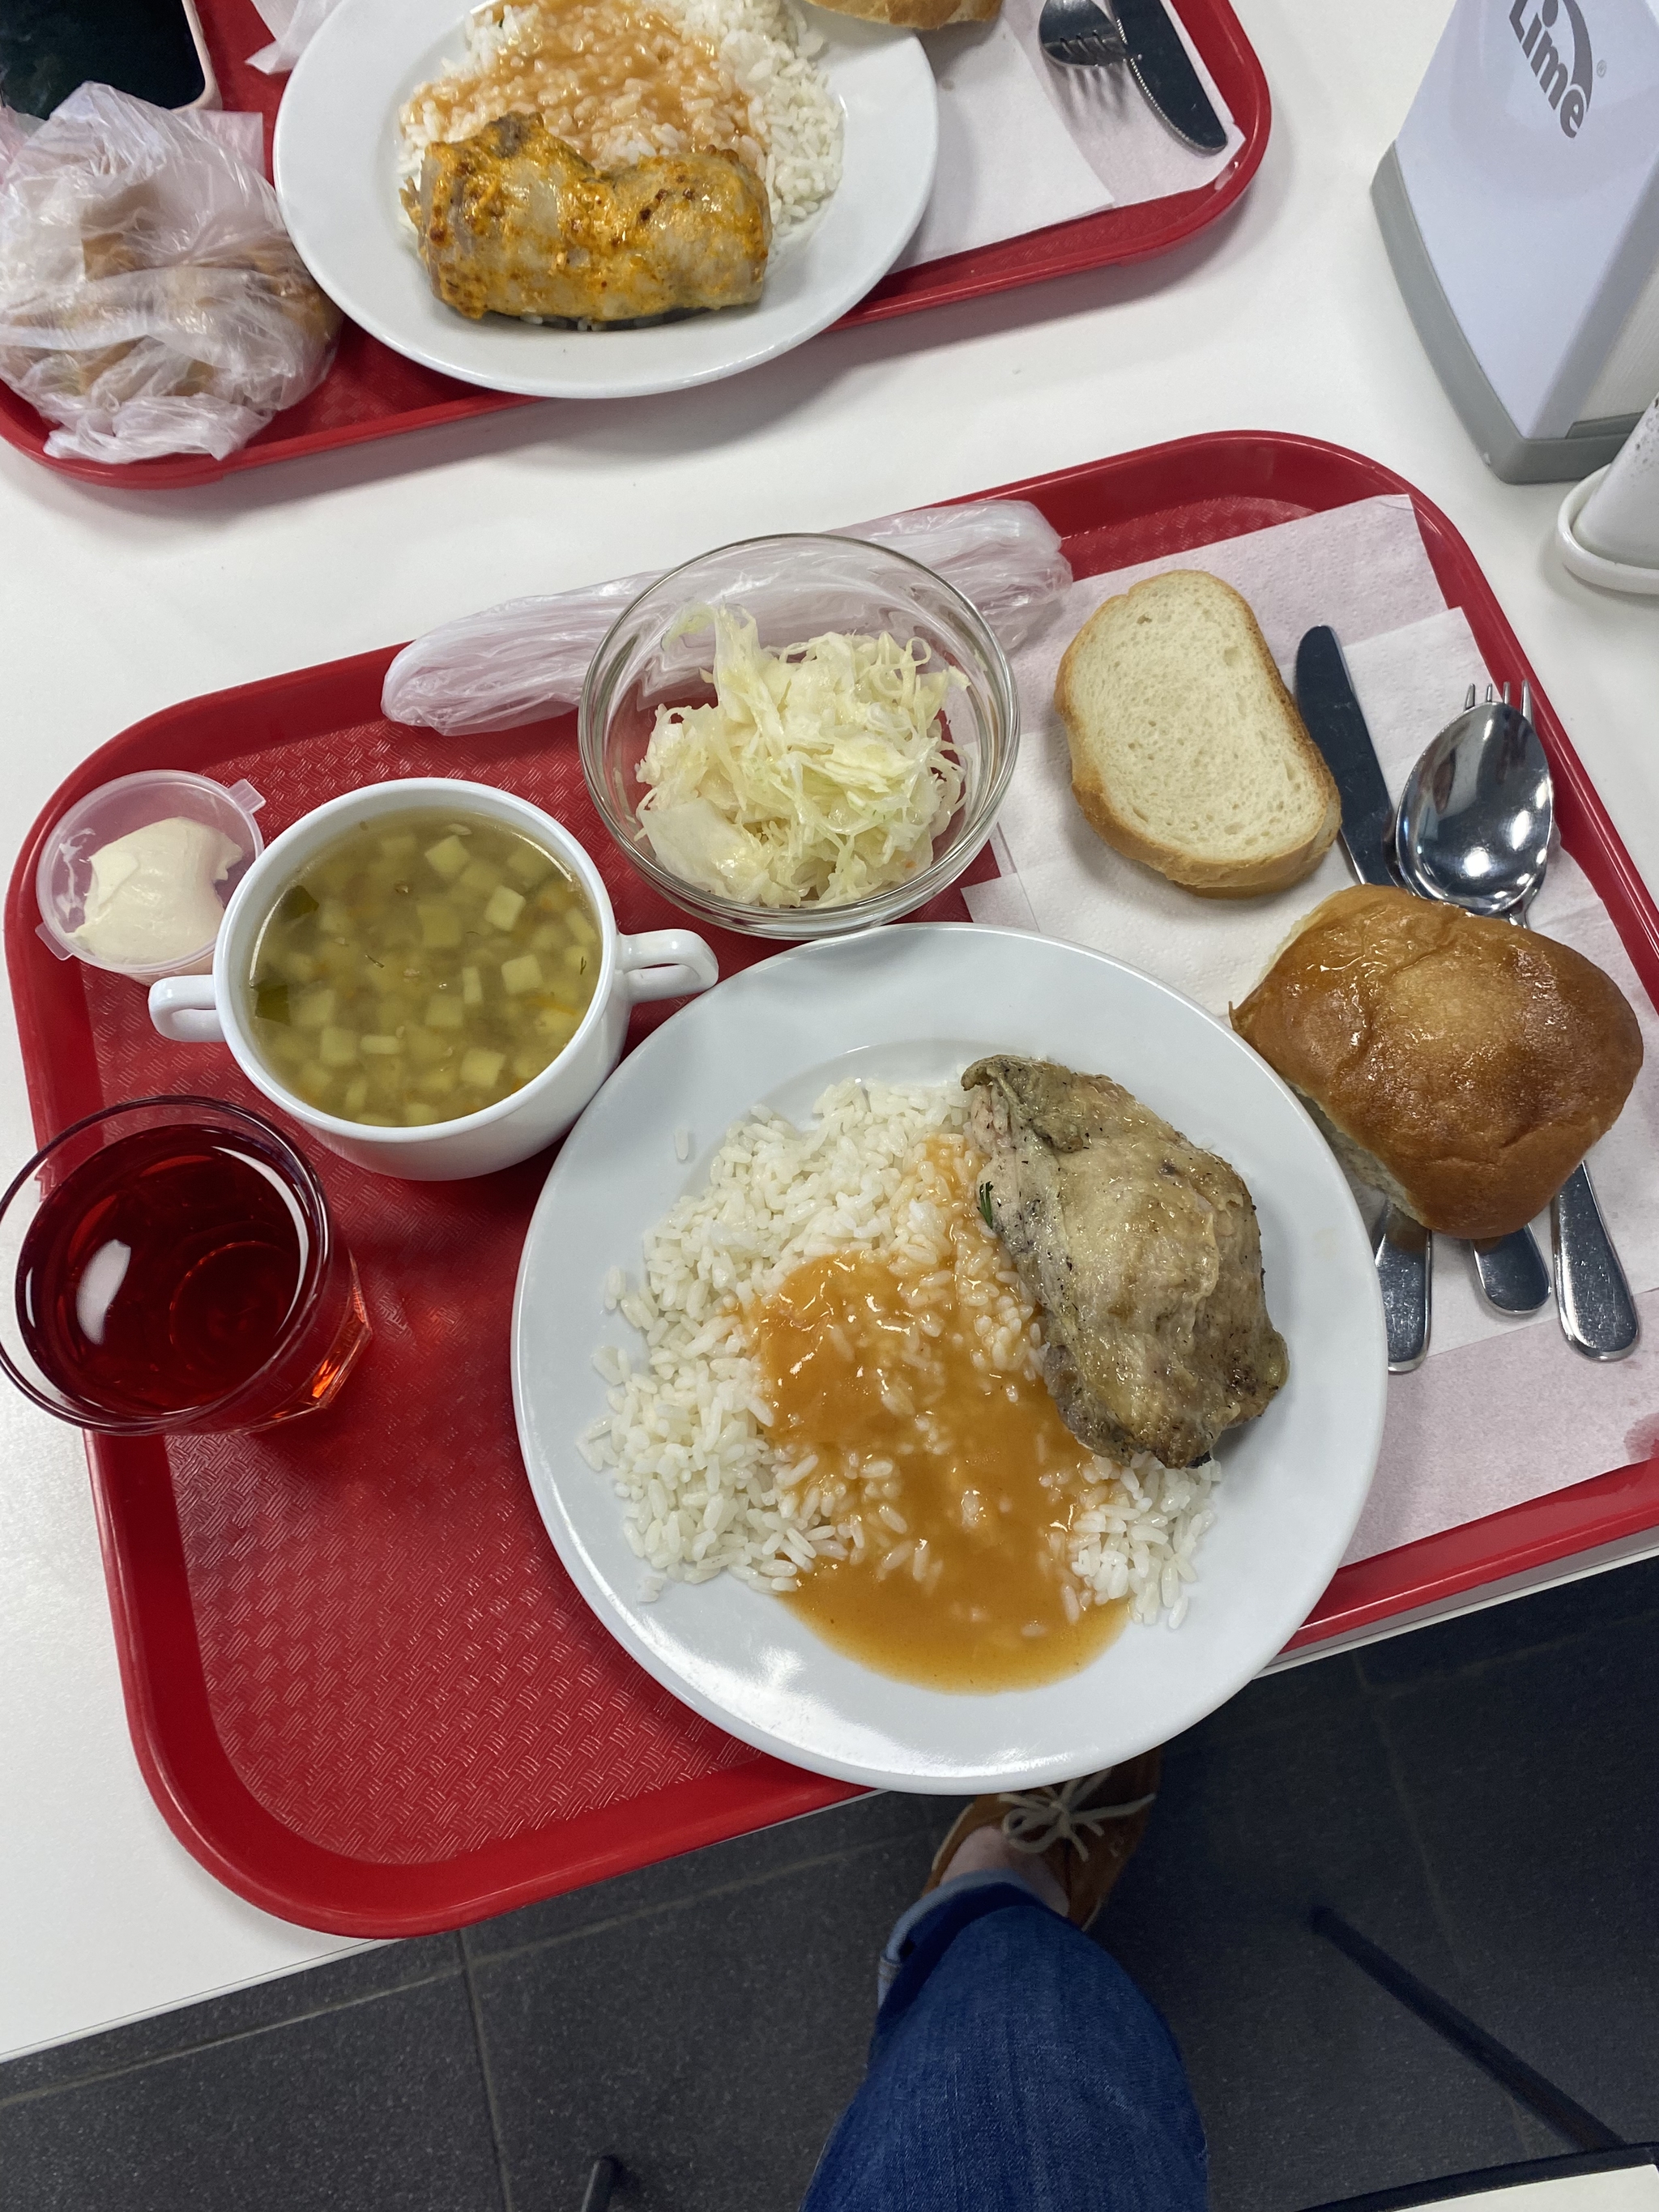 Обеды в столовой на работе | Пикабу